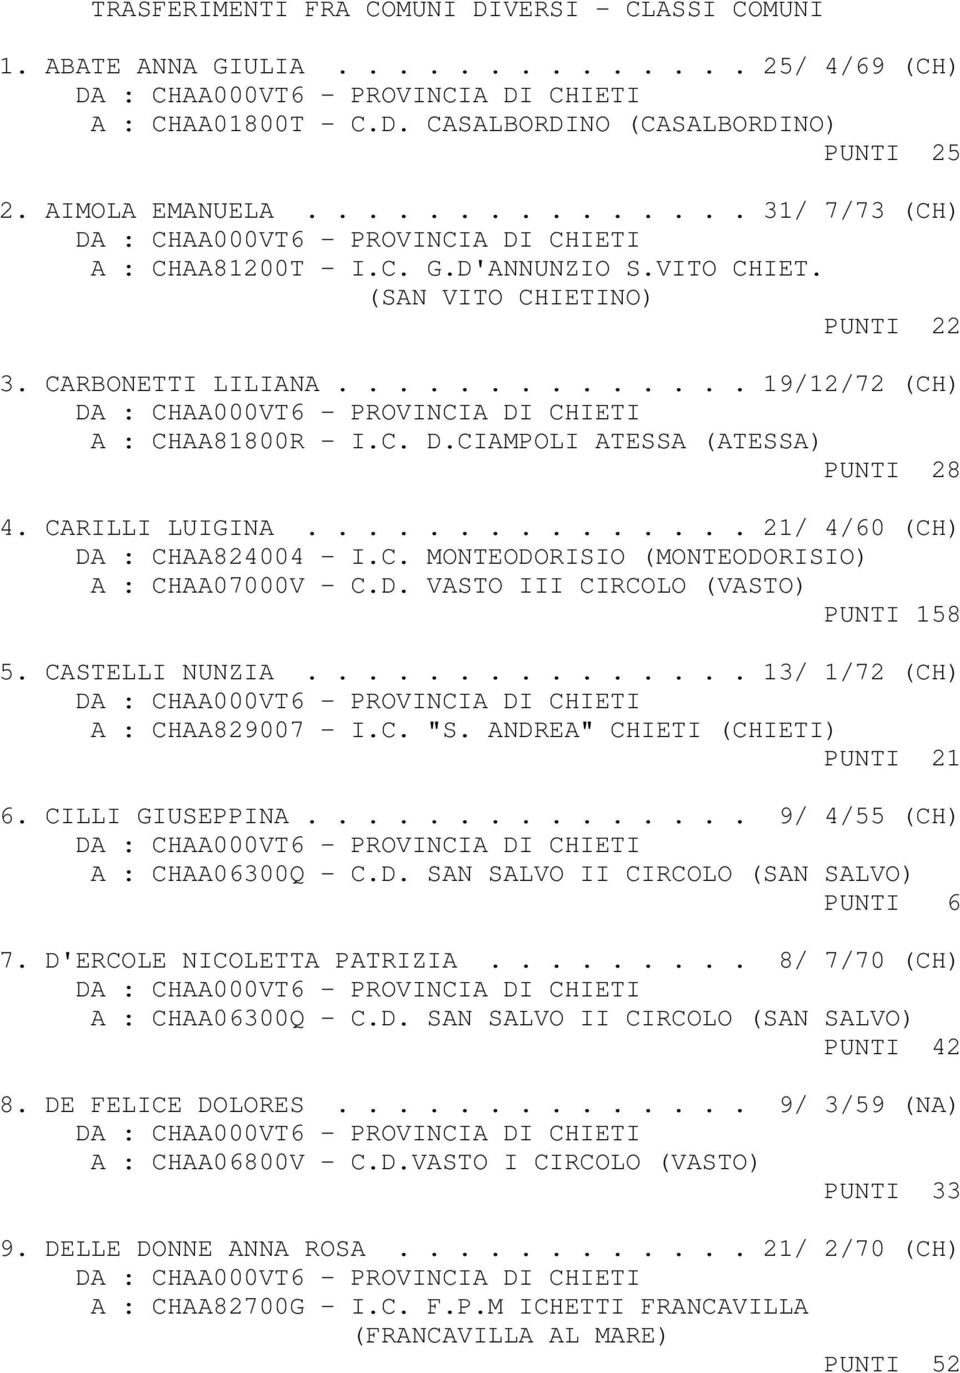 CIAMPOLI ATESSA (ATESSA) PUNTI 28 4. CARILLI LUIGINA............... 21/ 4/60 (CH) DA : CHAA824004 - I.C. MONTEODORISIO (MONTEODORISIO) A : CHAA07000V - C.D. VASTO III CIRCOLO (VASTO) PUNTI 158 5.